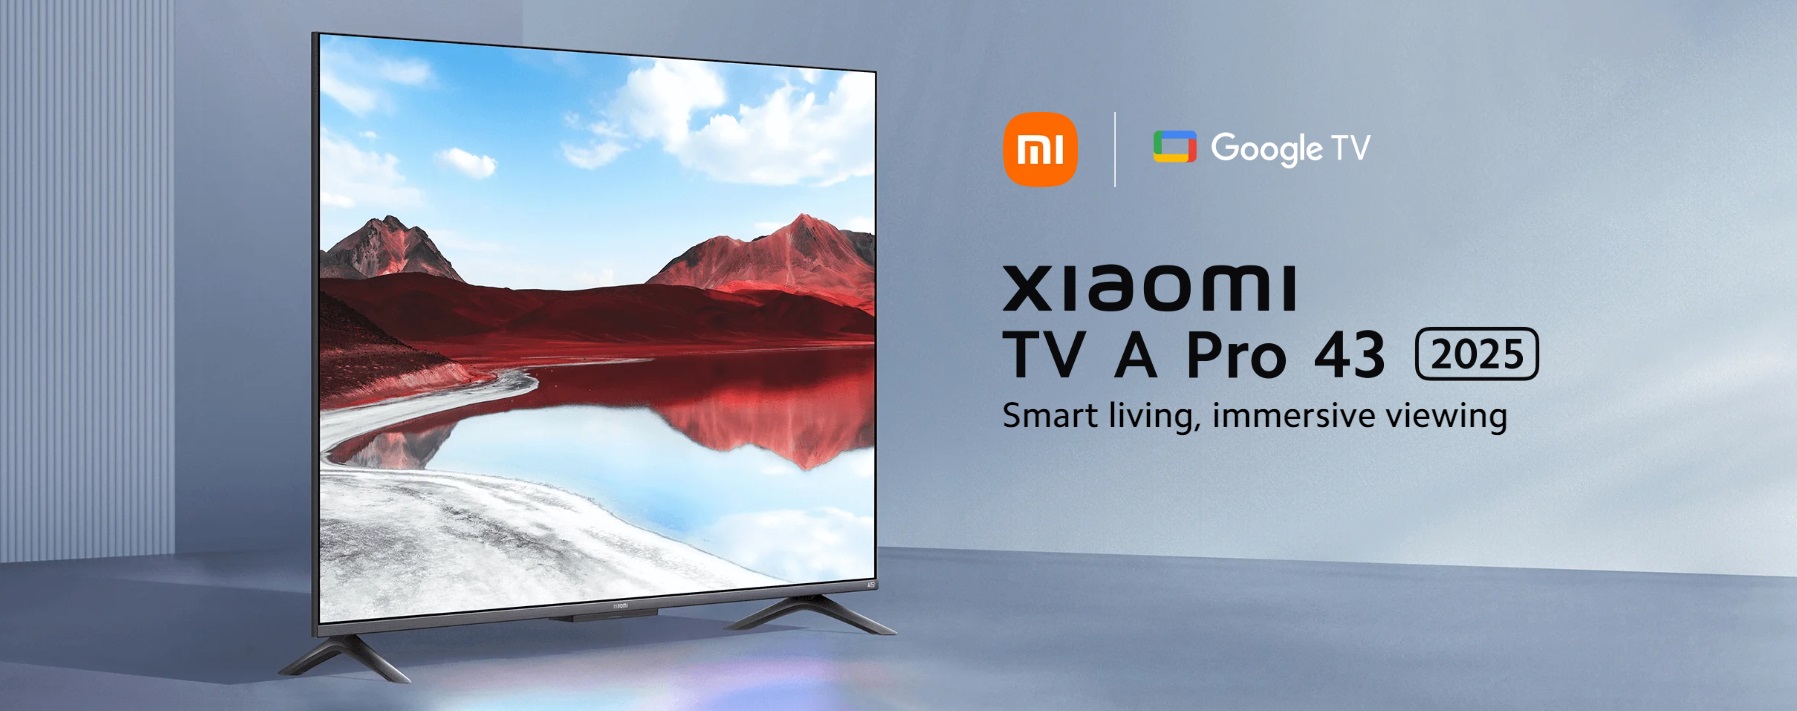 Смарт телевизор Xiaomi - A Pro 2025